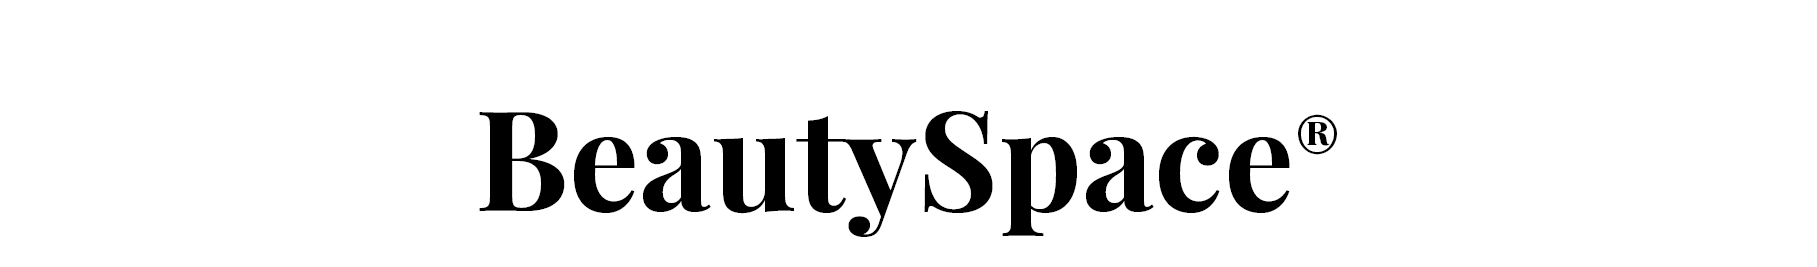 Beautyspace Book'n Beauty shop logo